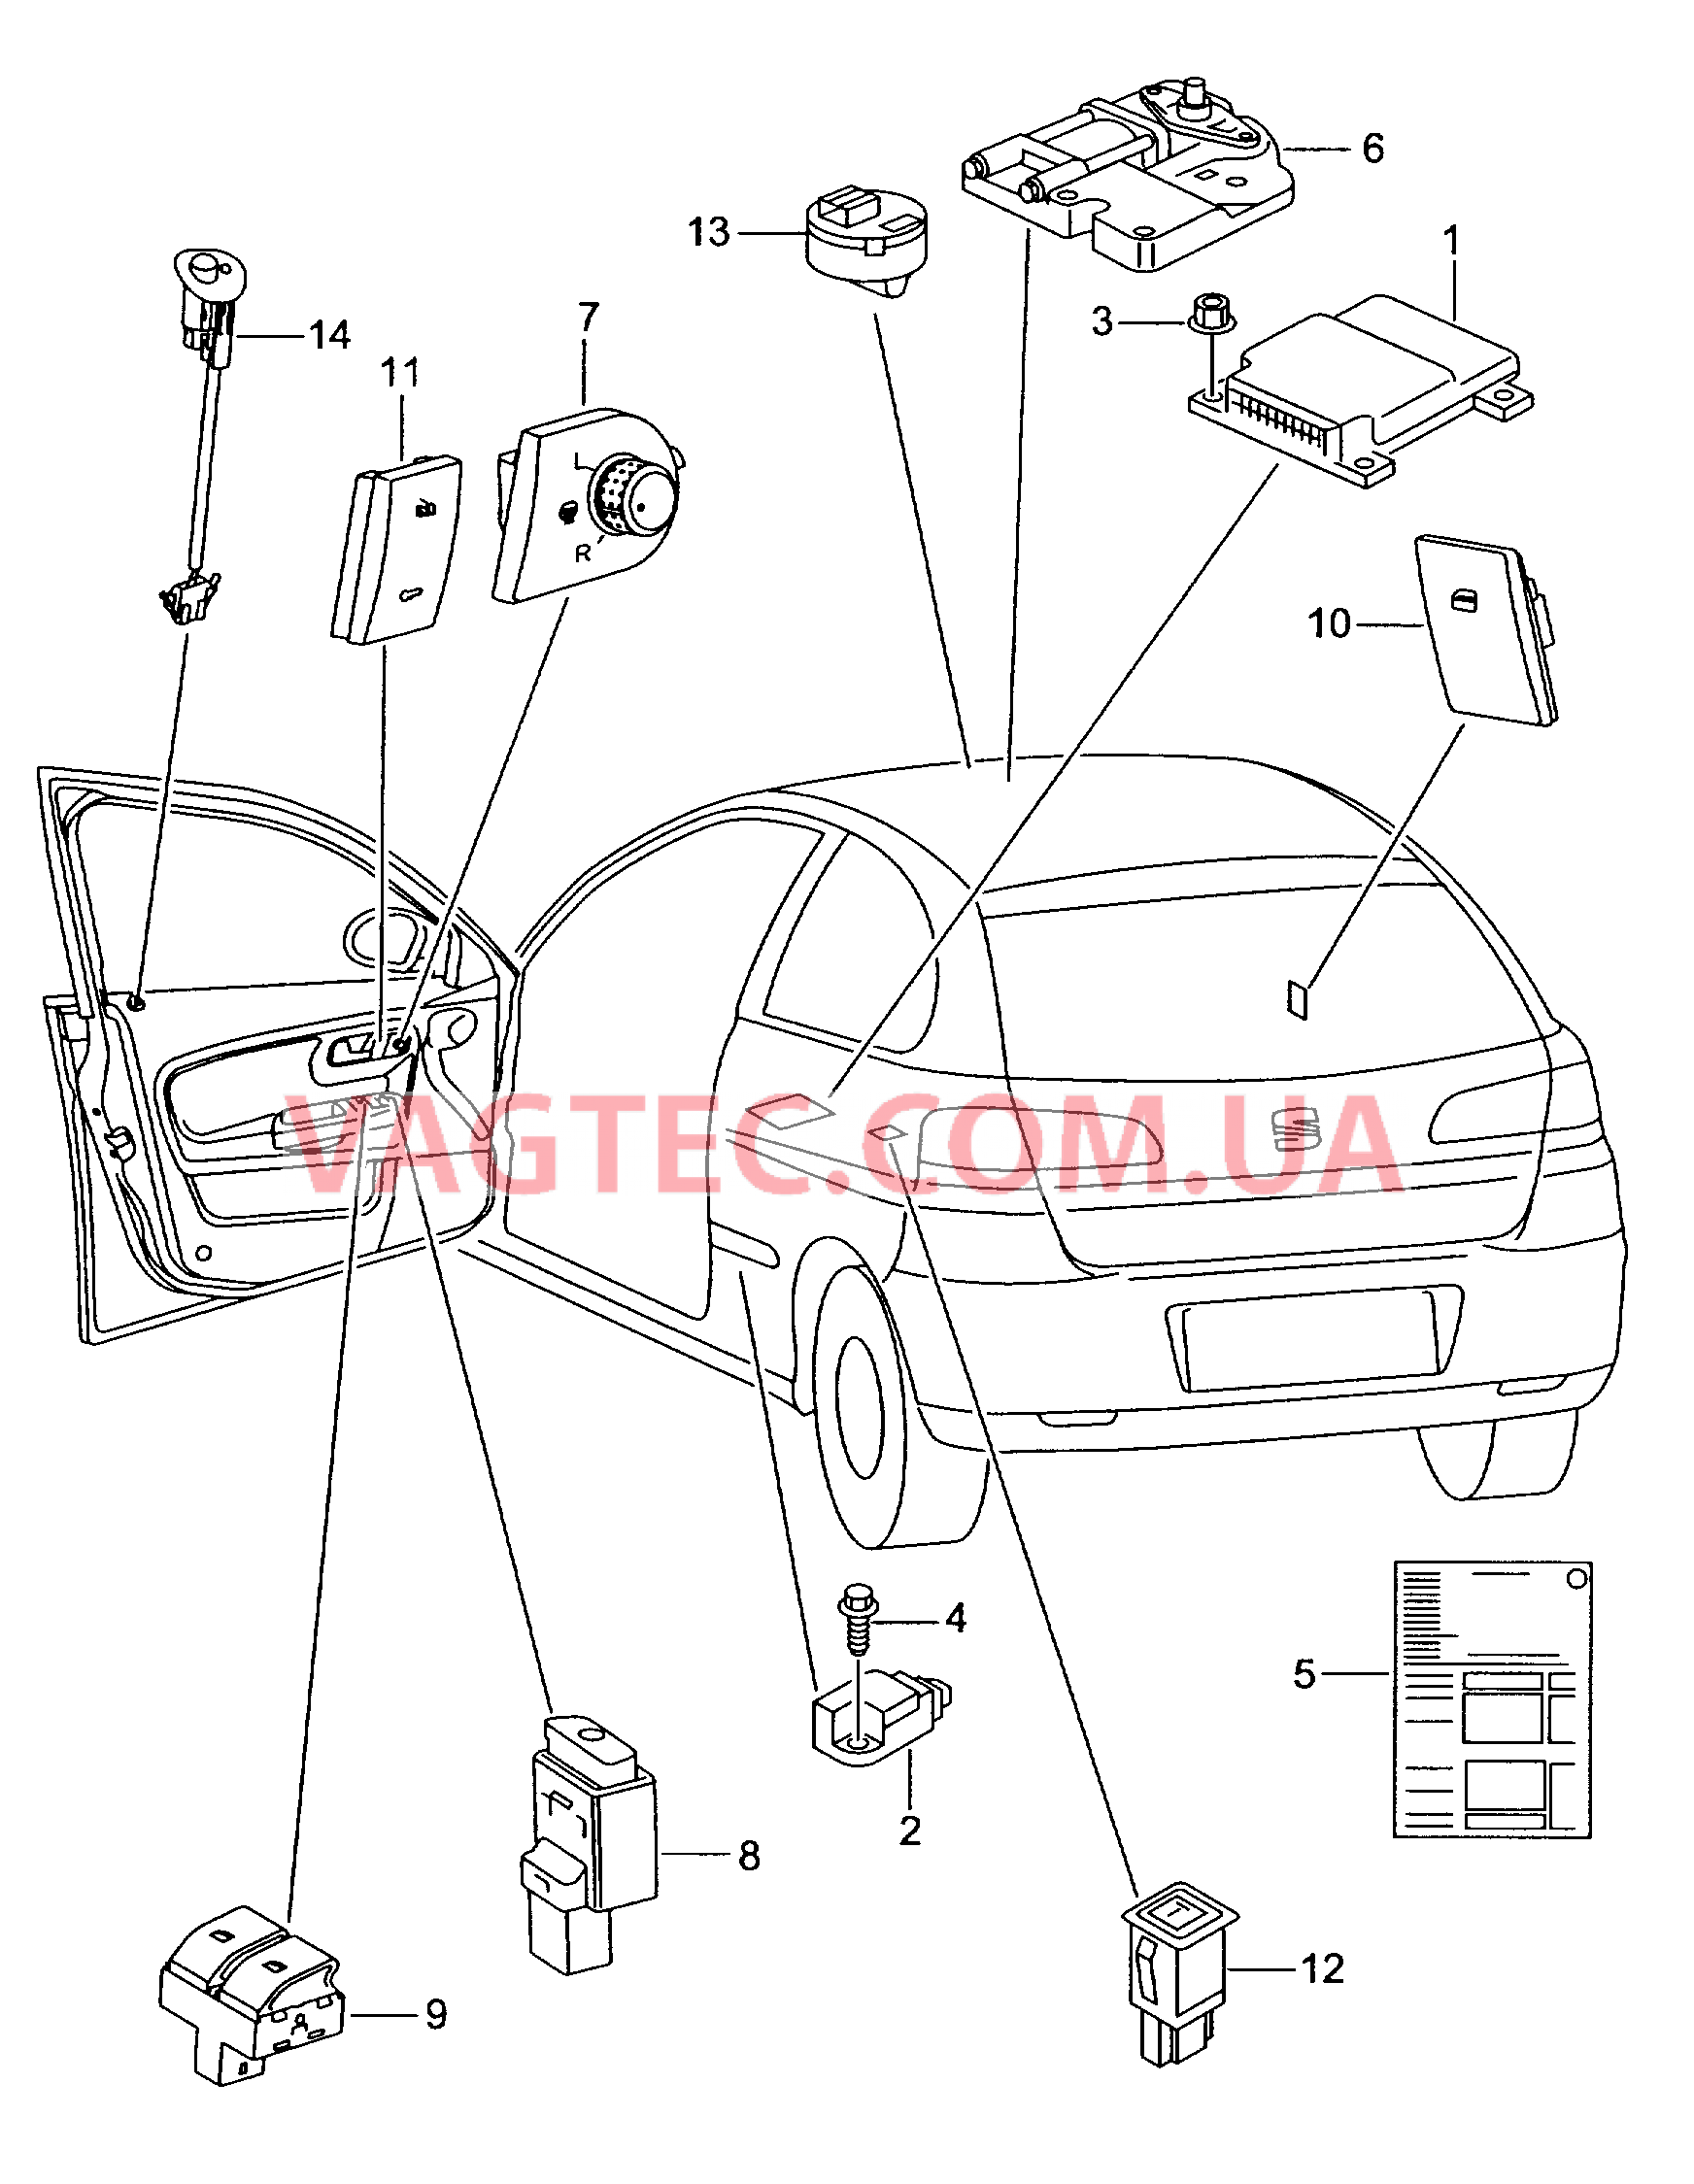 Электродетали для подуш.безоп. Мотор привода люка Выключатель в обивке двери Лампа, контрольная для противоугонной системы  для SEAT Ibiza 2007